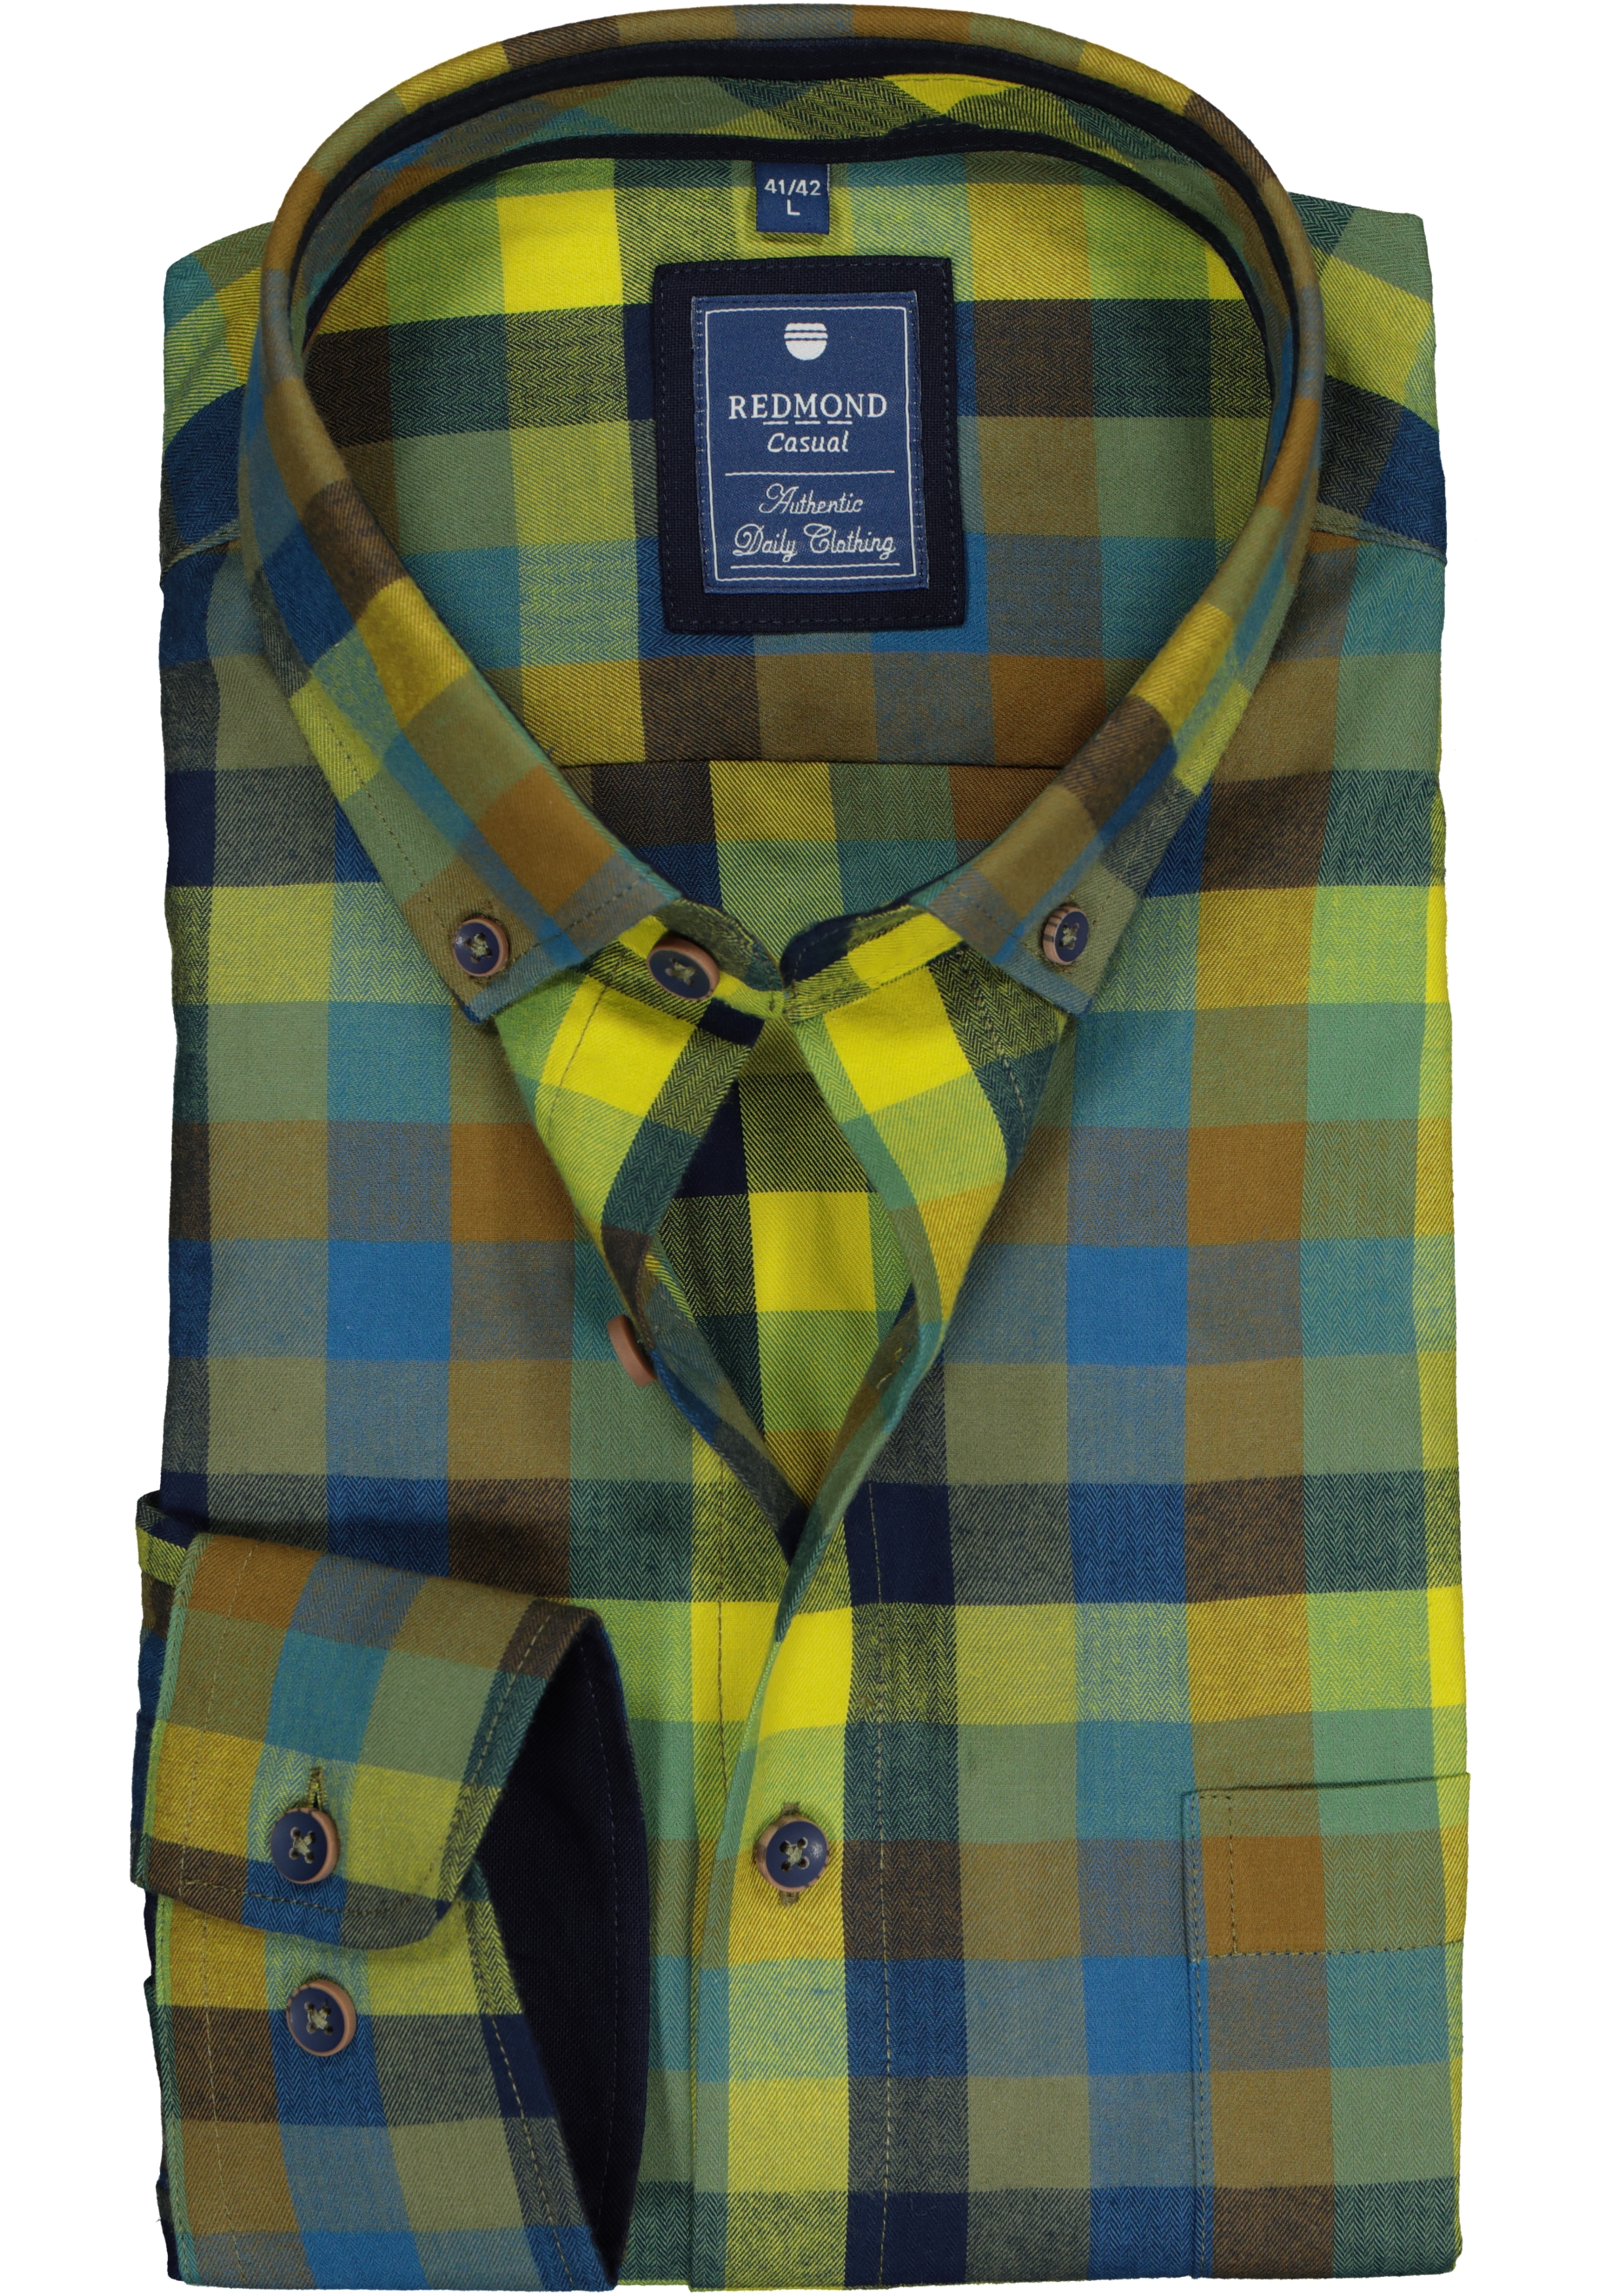 Redmond regular fit overhemd, visgraad, blauw met groen en geel geruit (contrast)